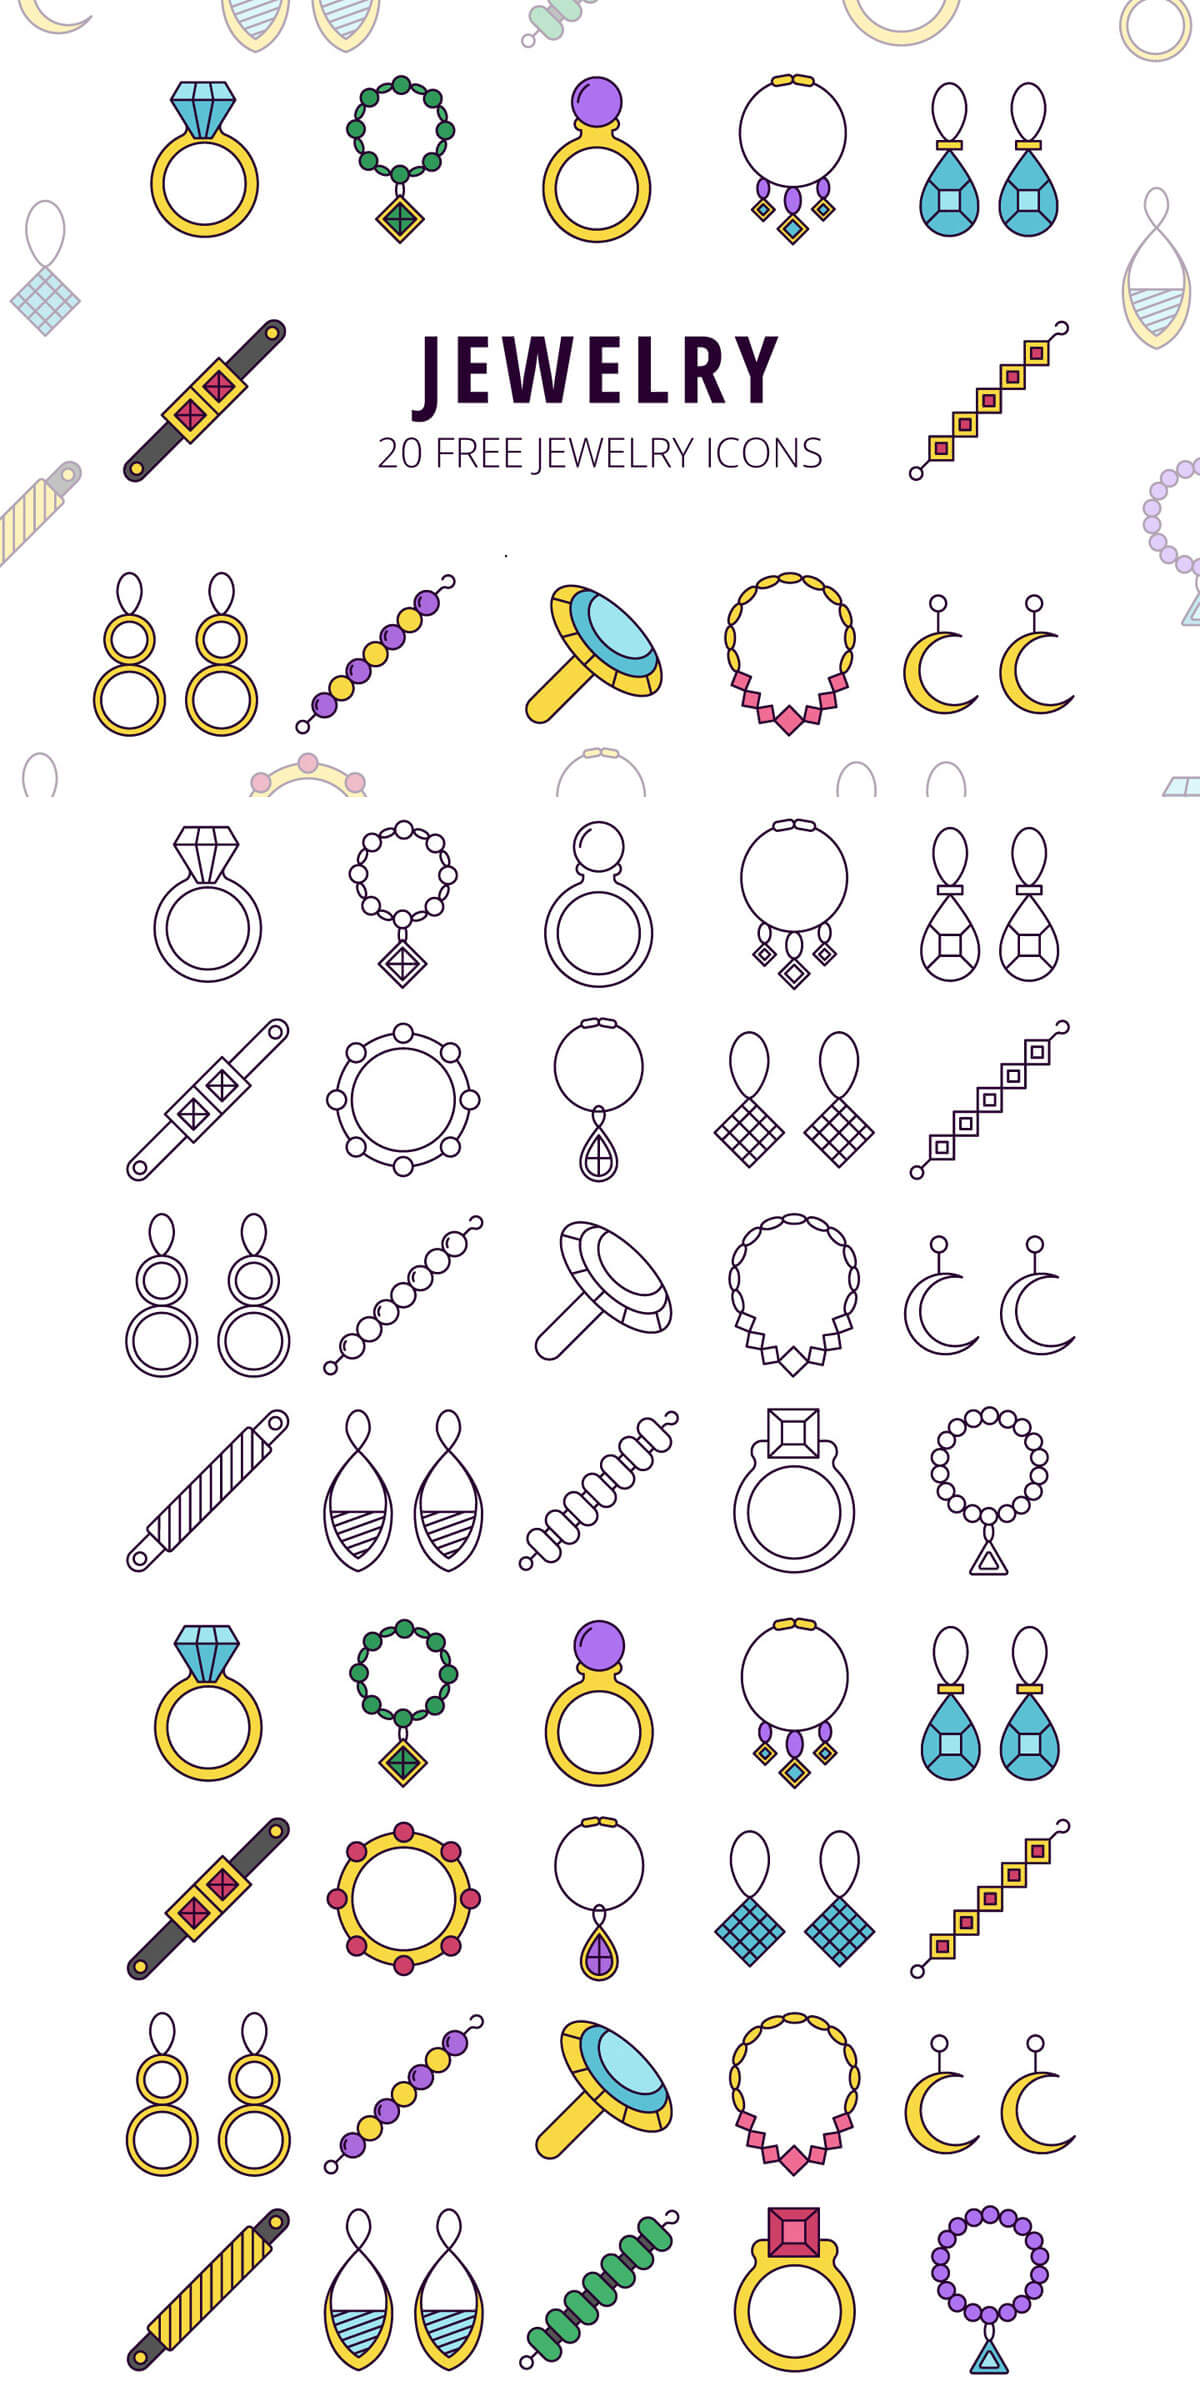 Free Jewelry Vector Icon Set